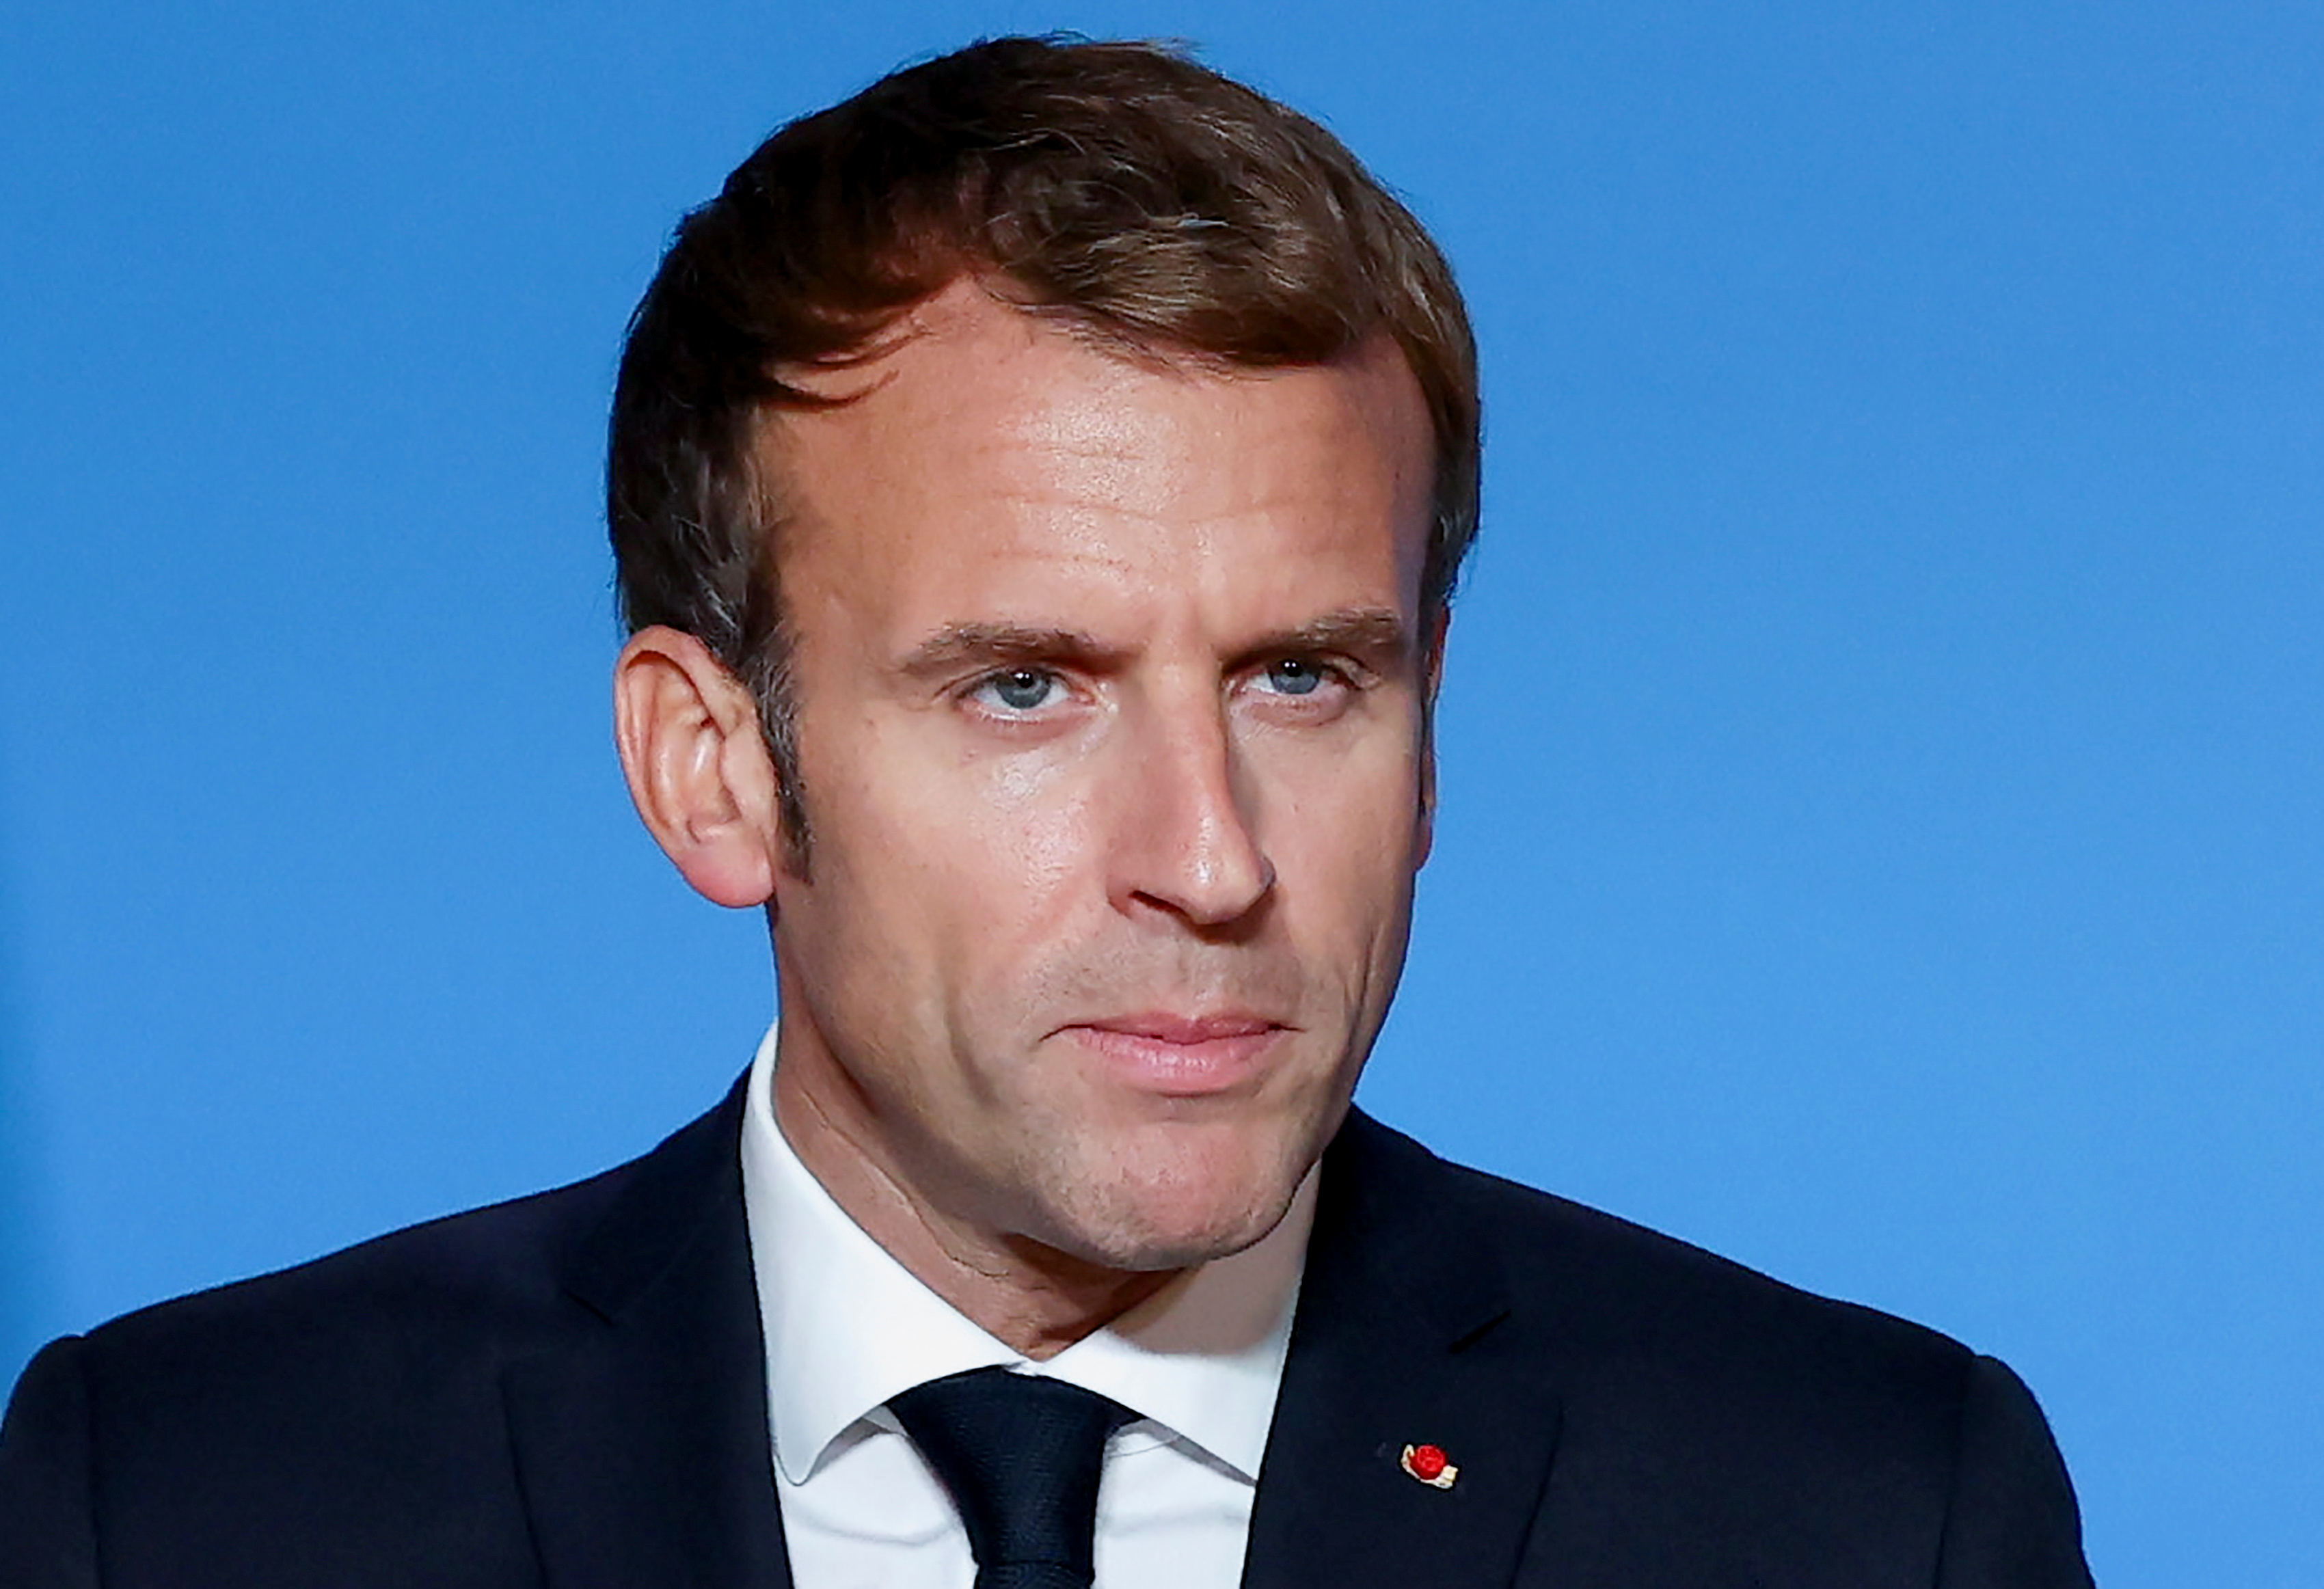 Tổng thống Pháp Emmanuel Macron tổ chức một cuộc họp báo vào cuối ngày thứ hai của cuộc họp các nhà lãnh đạo Liên minh châu Âu tại Brussels, Bỉ ngày 22 tháng 2021 năm XNUMX. Aris Oikonomou / Pool via REUTERS